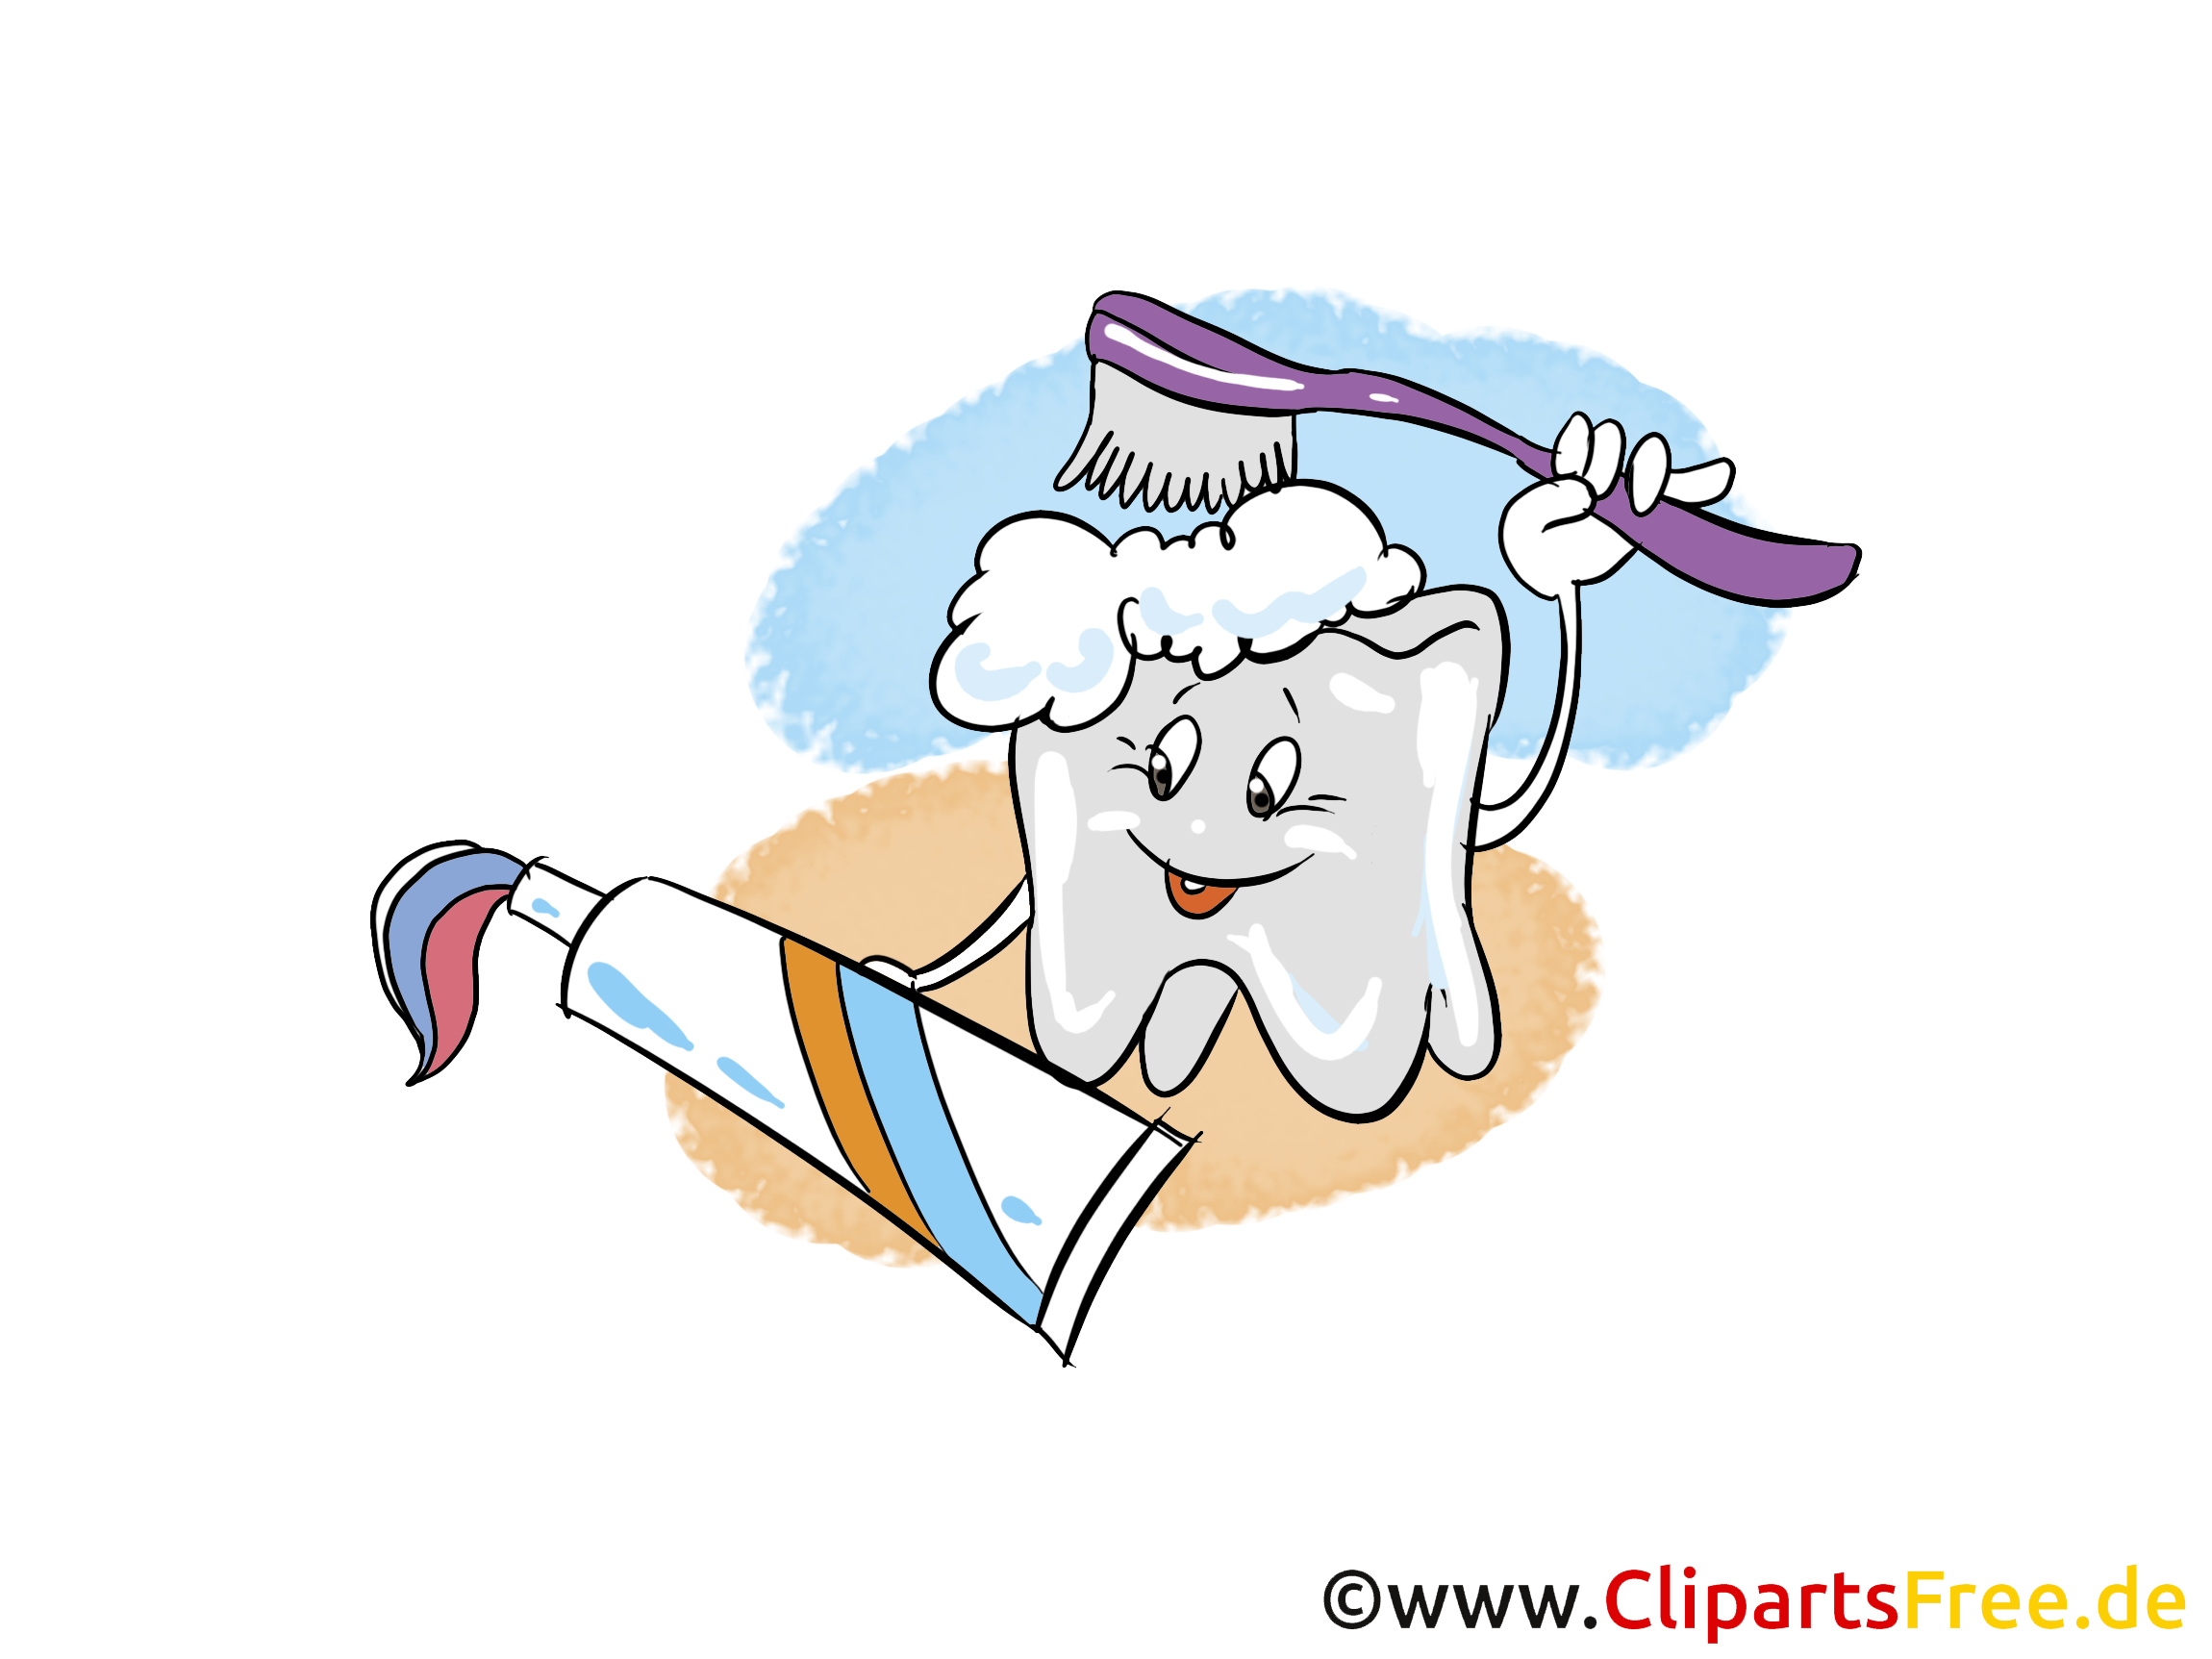 clipart zahnarzt kostenlos - photo #6